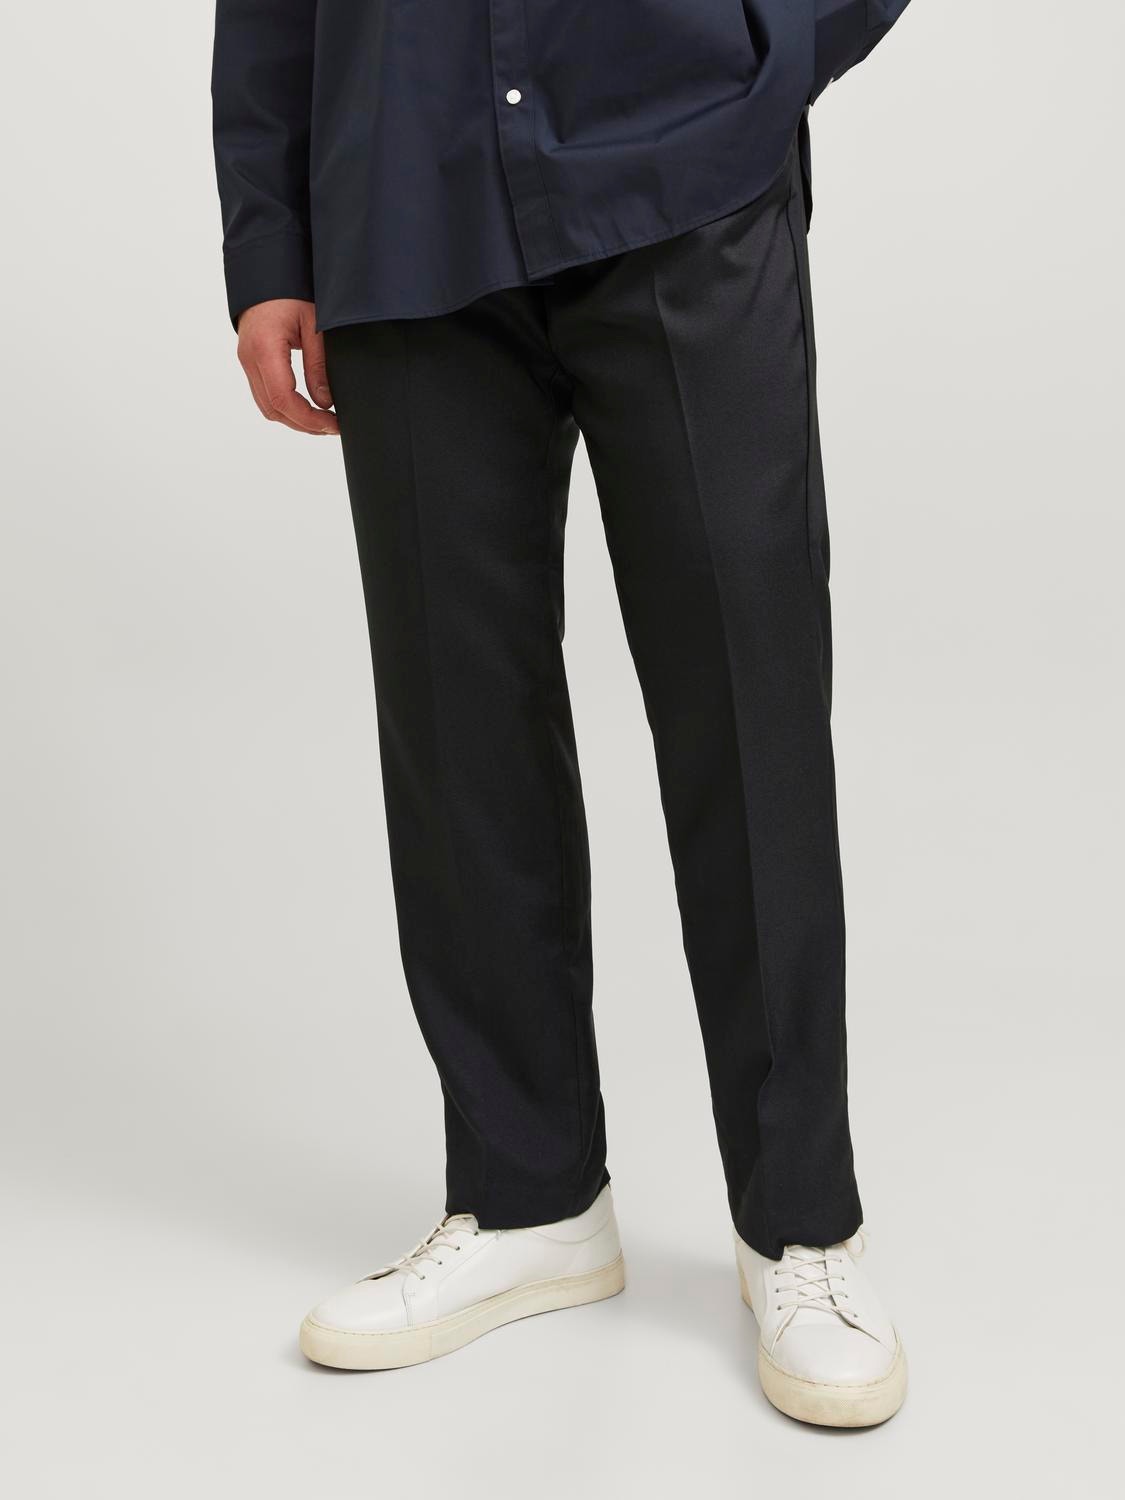 Jack & Jones Plus Size Pantaloni chino Slim Fit -Black - 12252525